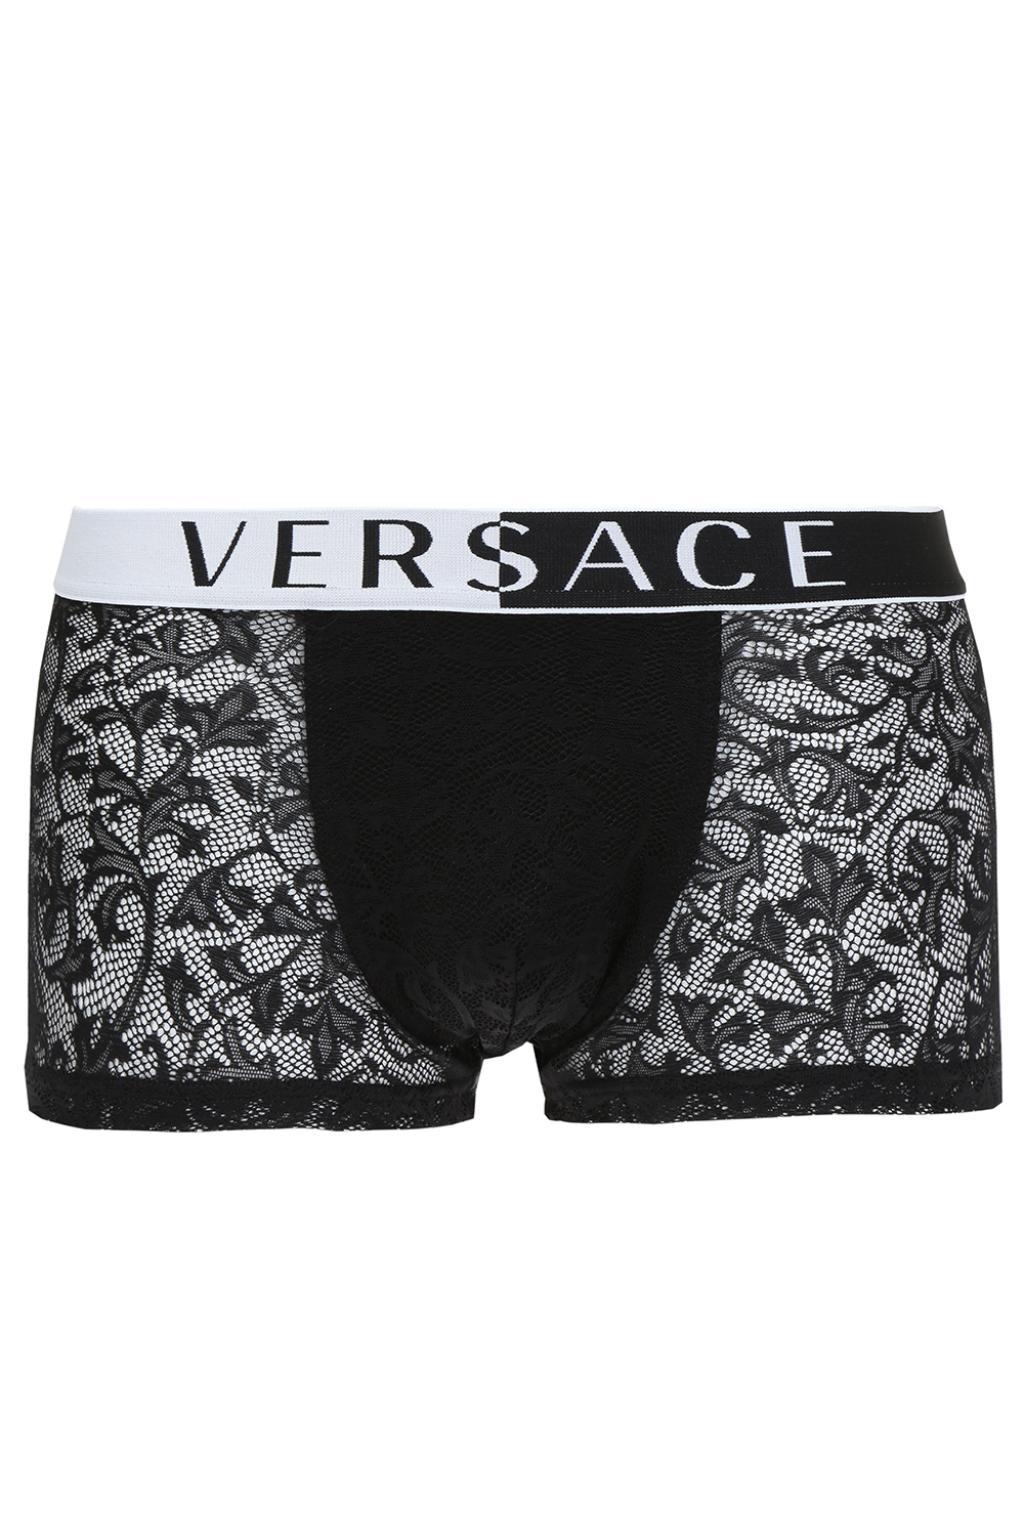 versace lace briefs